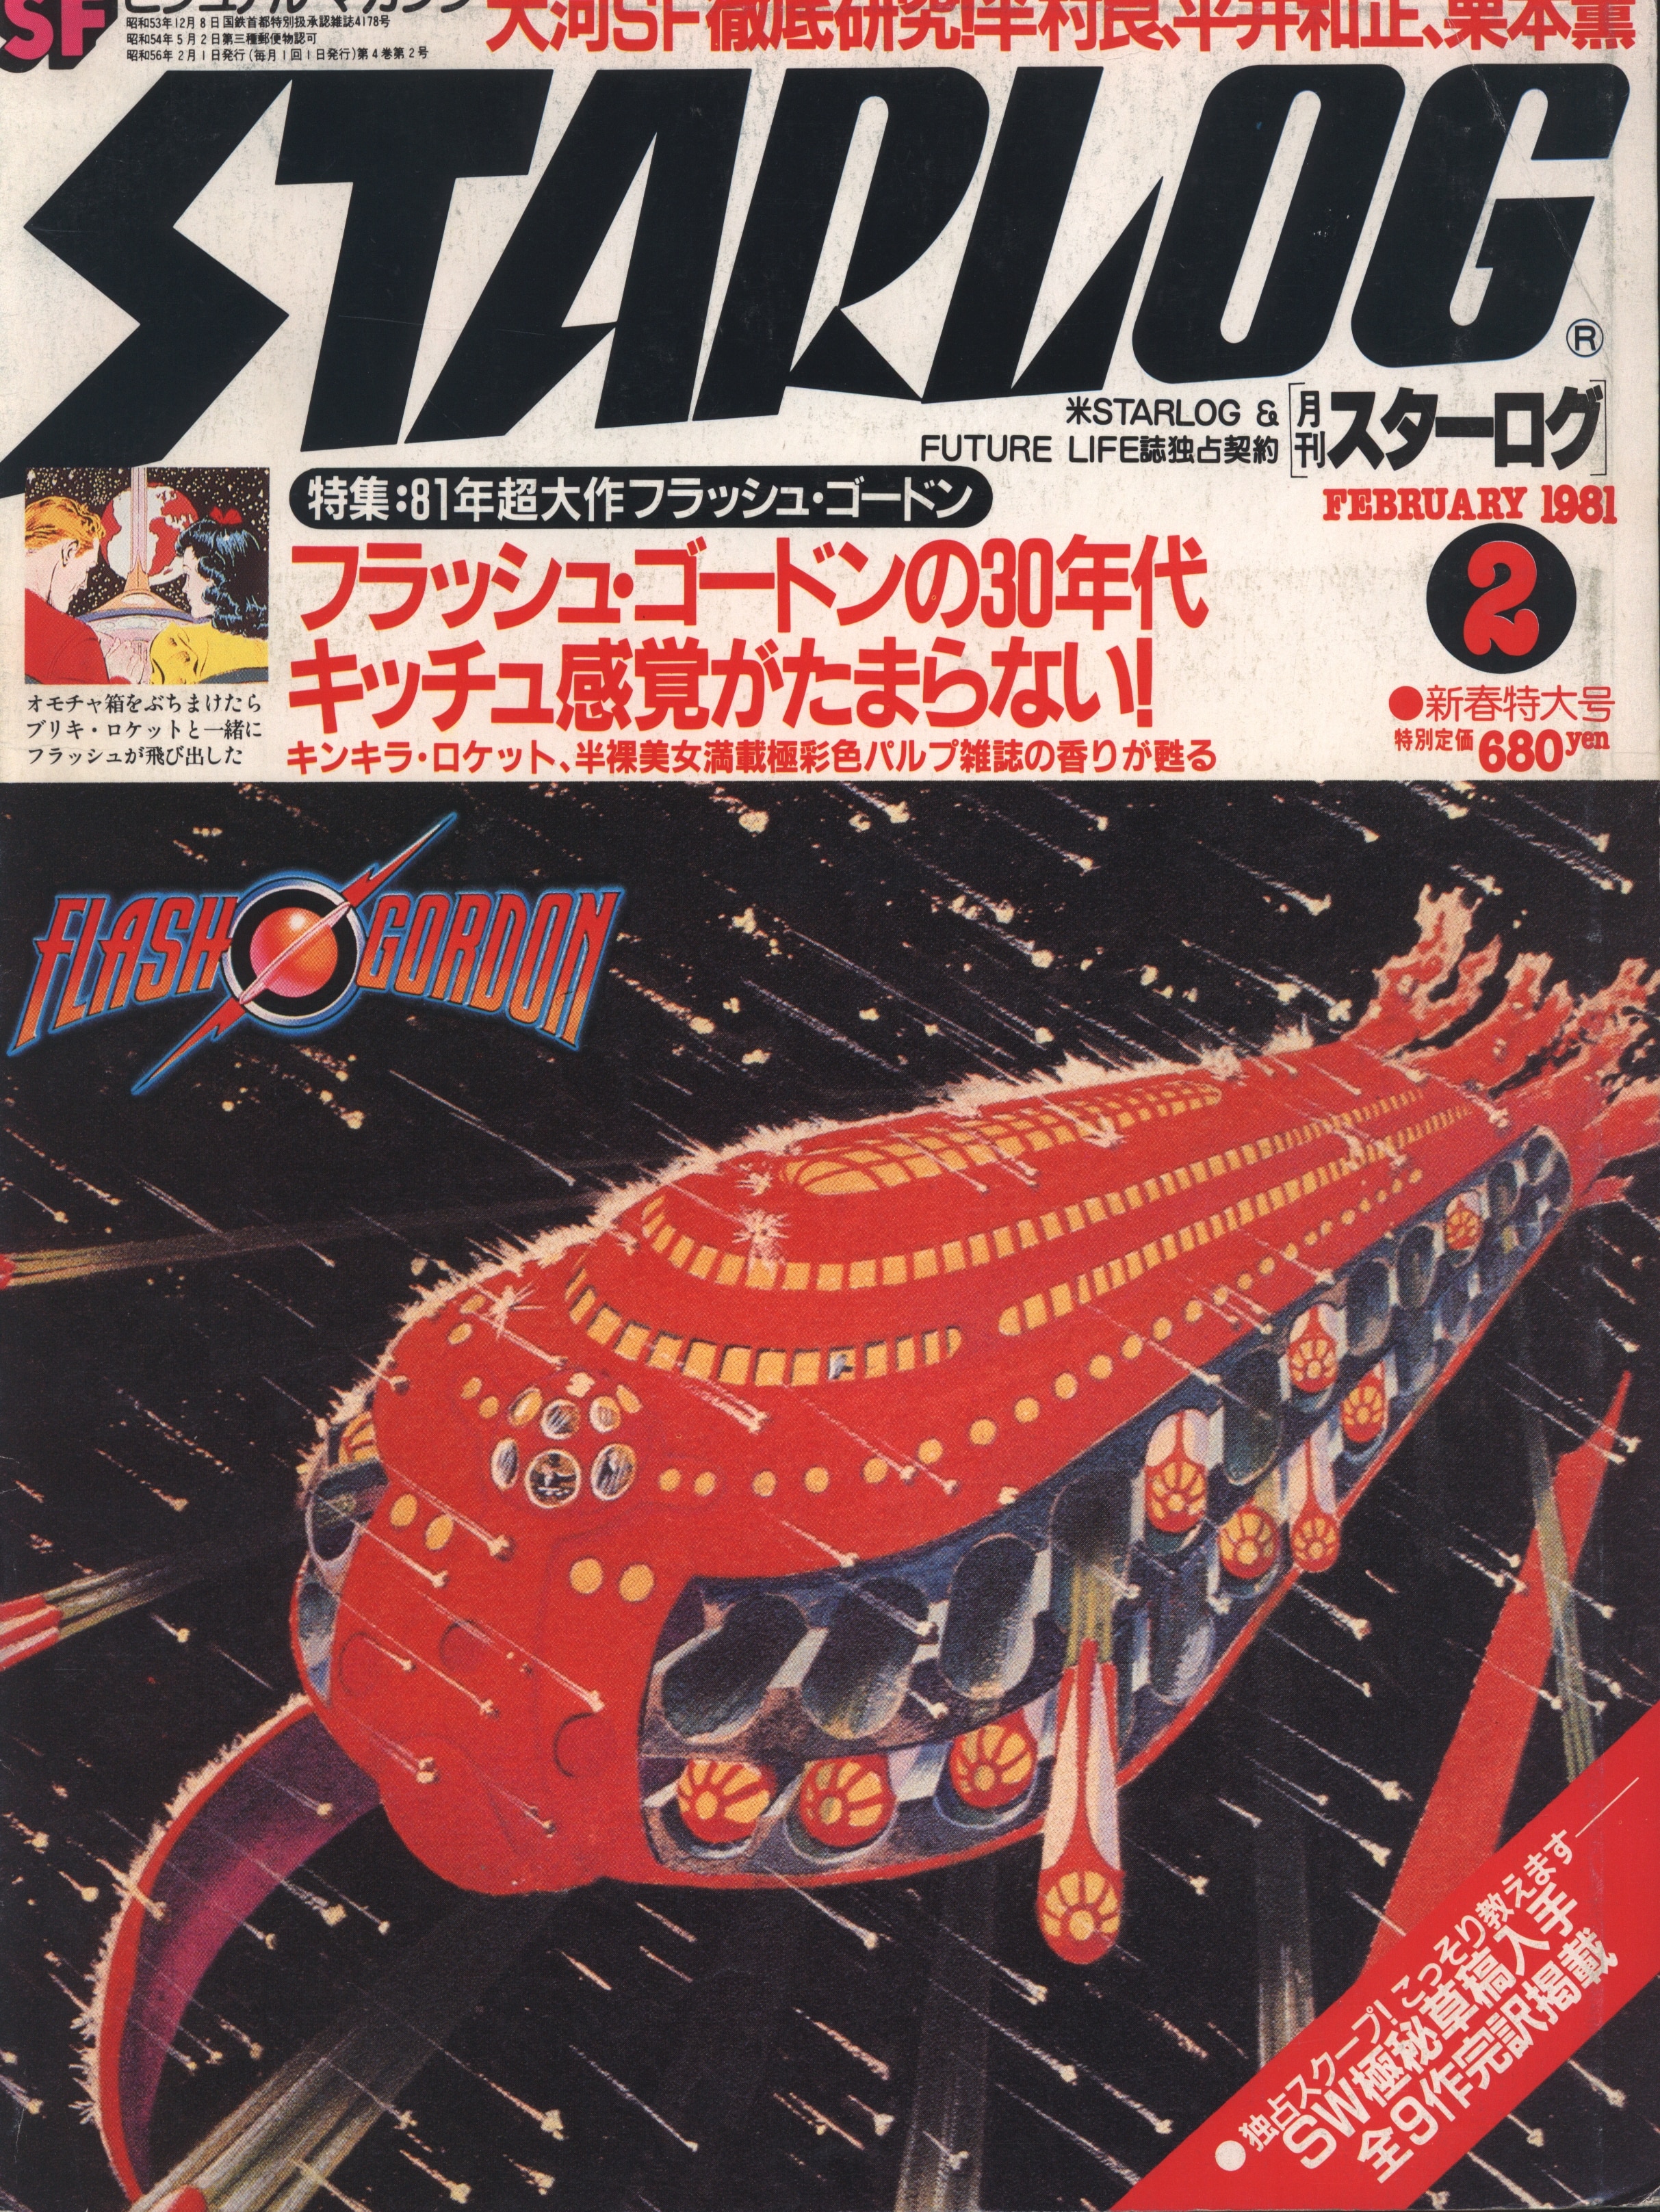 スターログ STARLOG 1981年1月 新年特大号 - 趣味